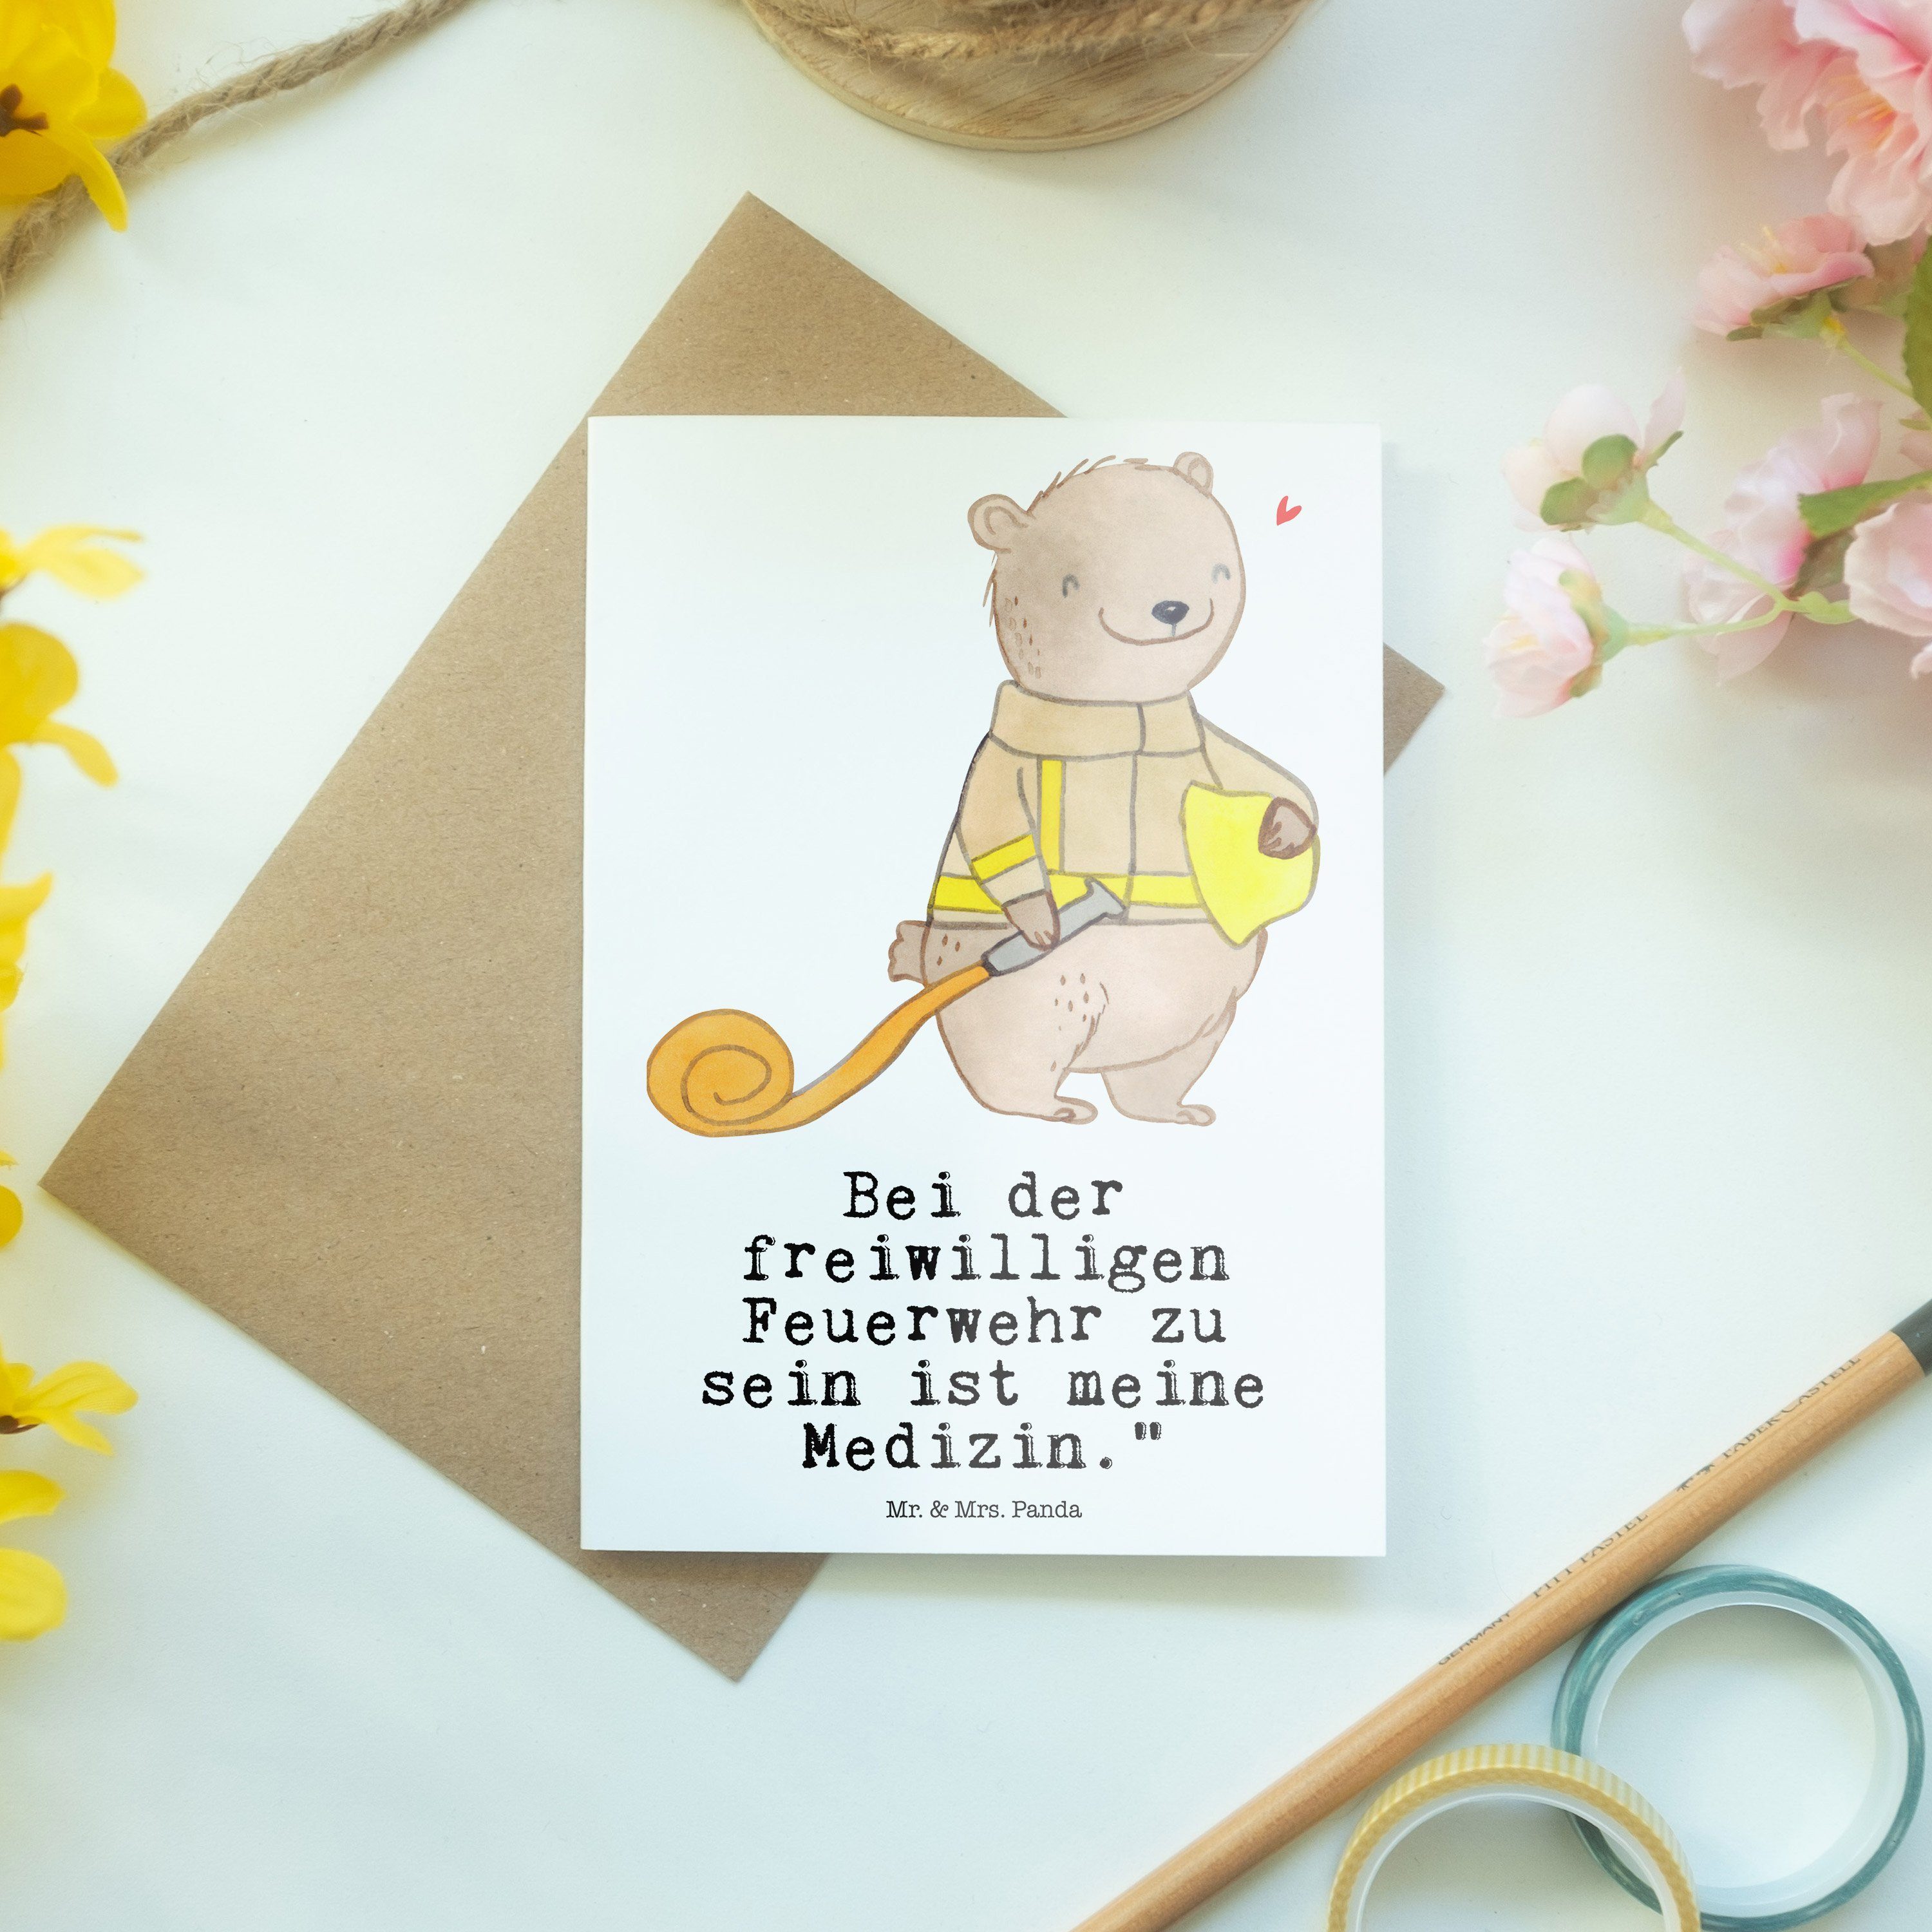 Geschenk, Mr. Dankeschön, Freiwillige Mrs. Panda - Feuerwehr & Grußkarte - Medizin Glüc Weiß Bär